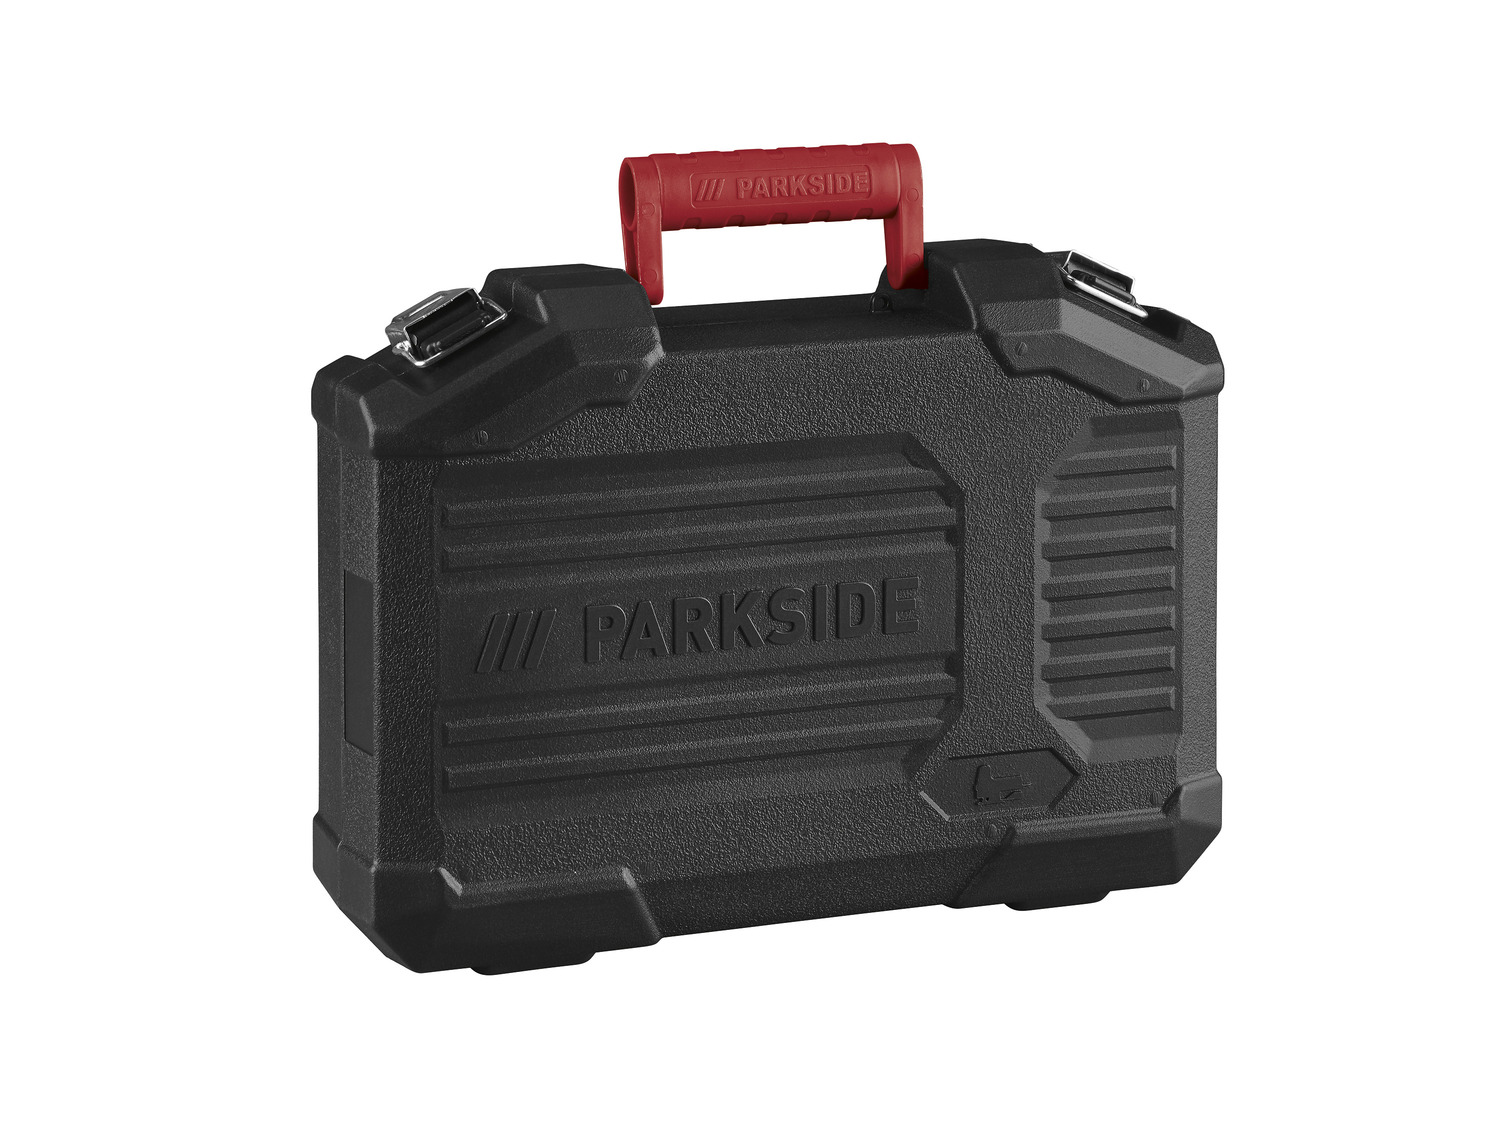 E3«, mit »PSTK PARKSIDE® 800 Laserf… Pendelhubstichsäge